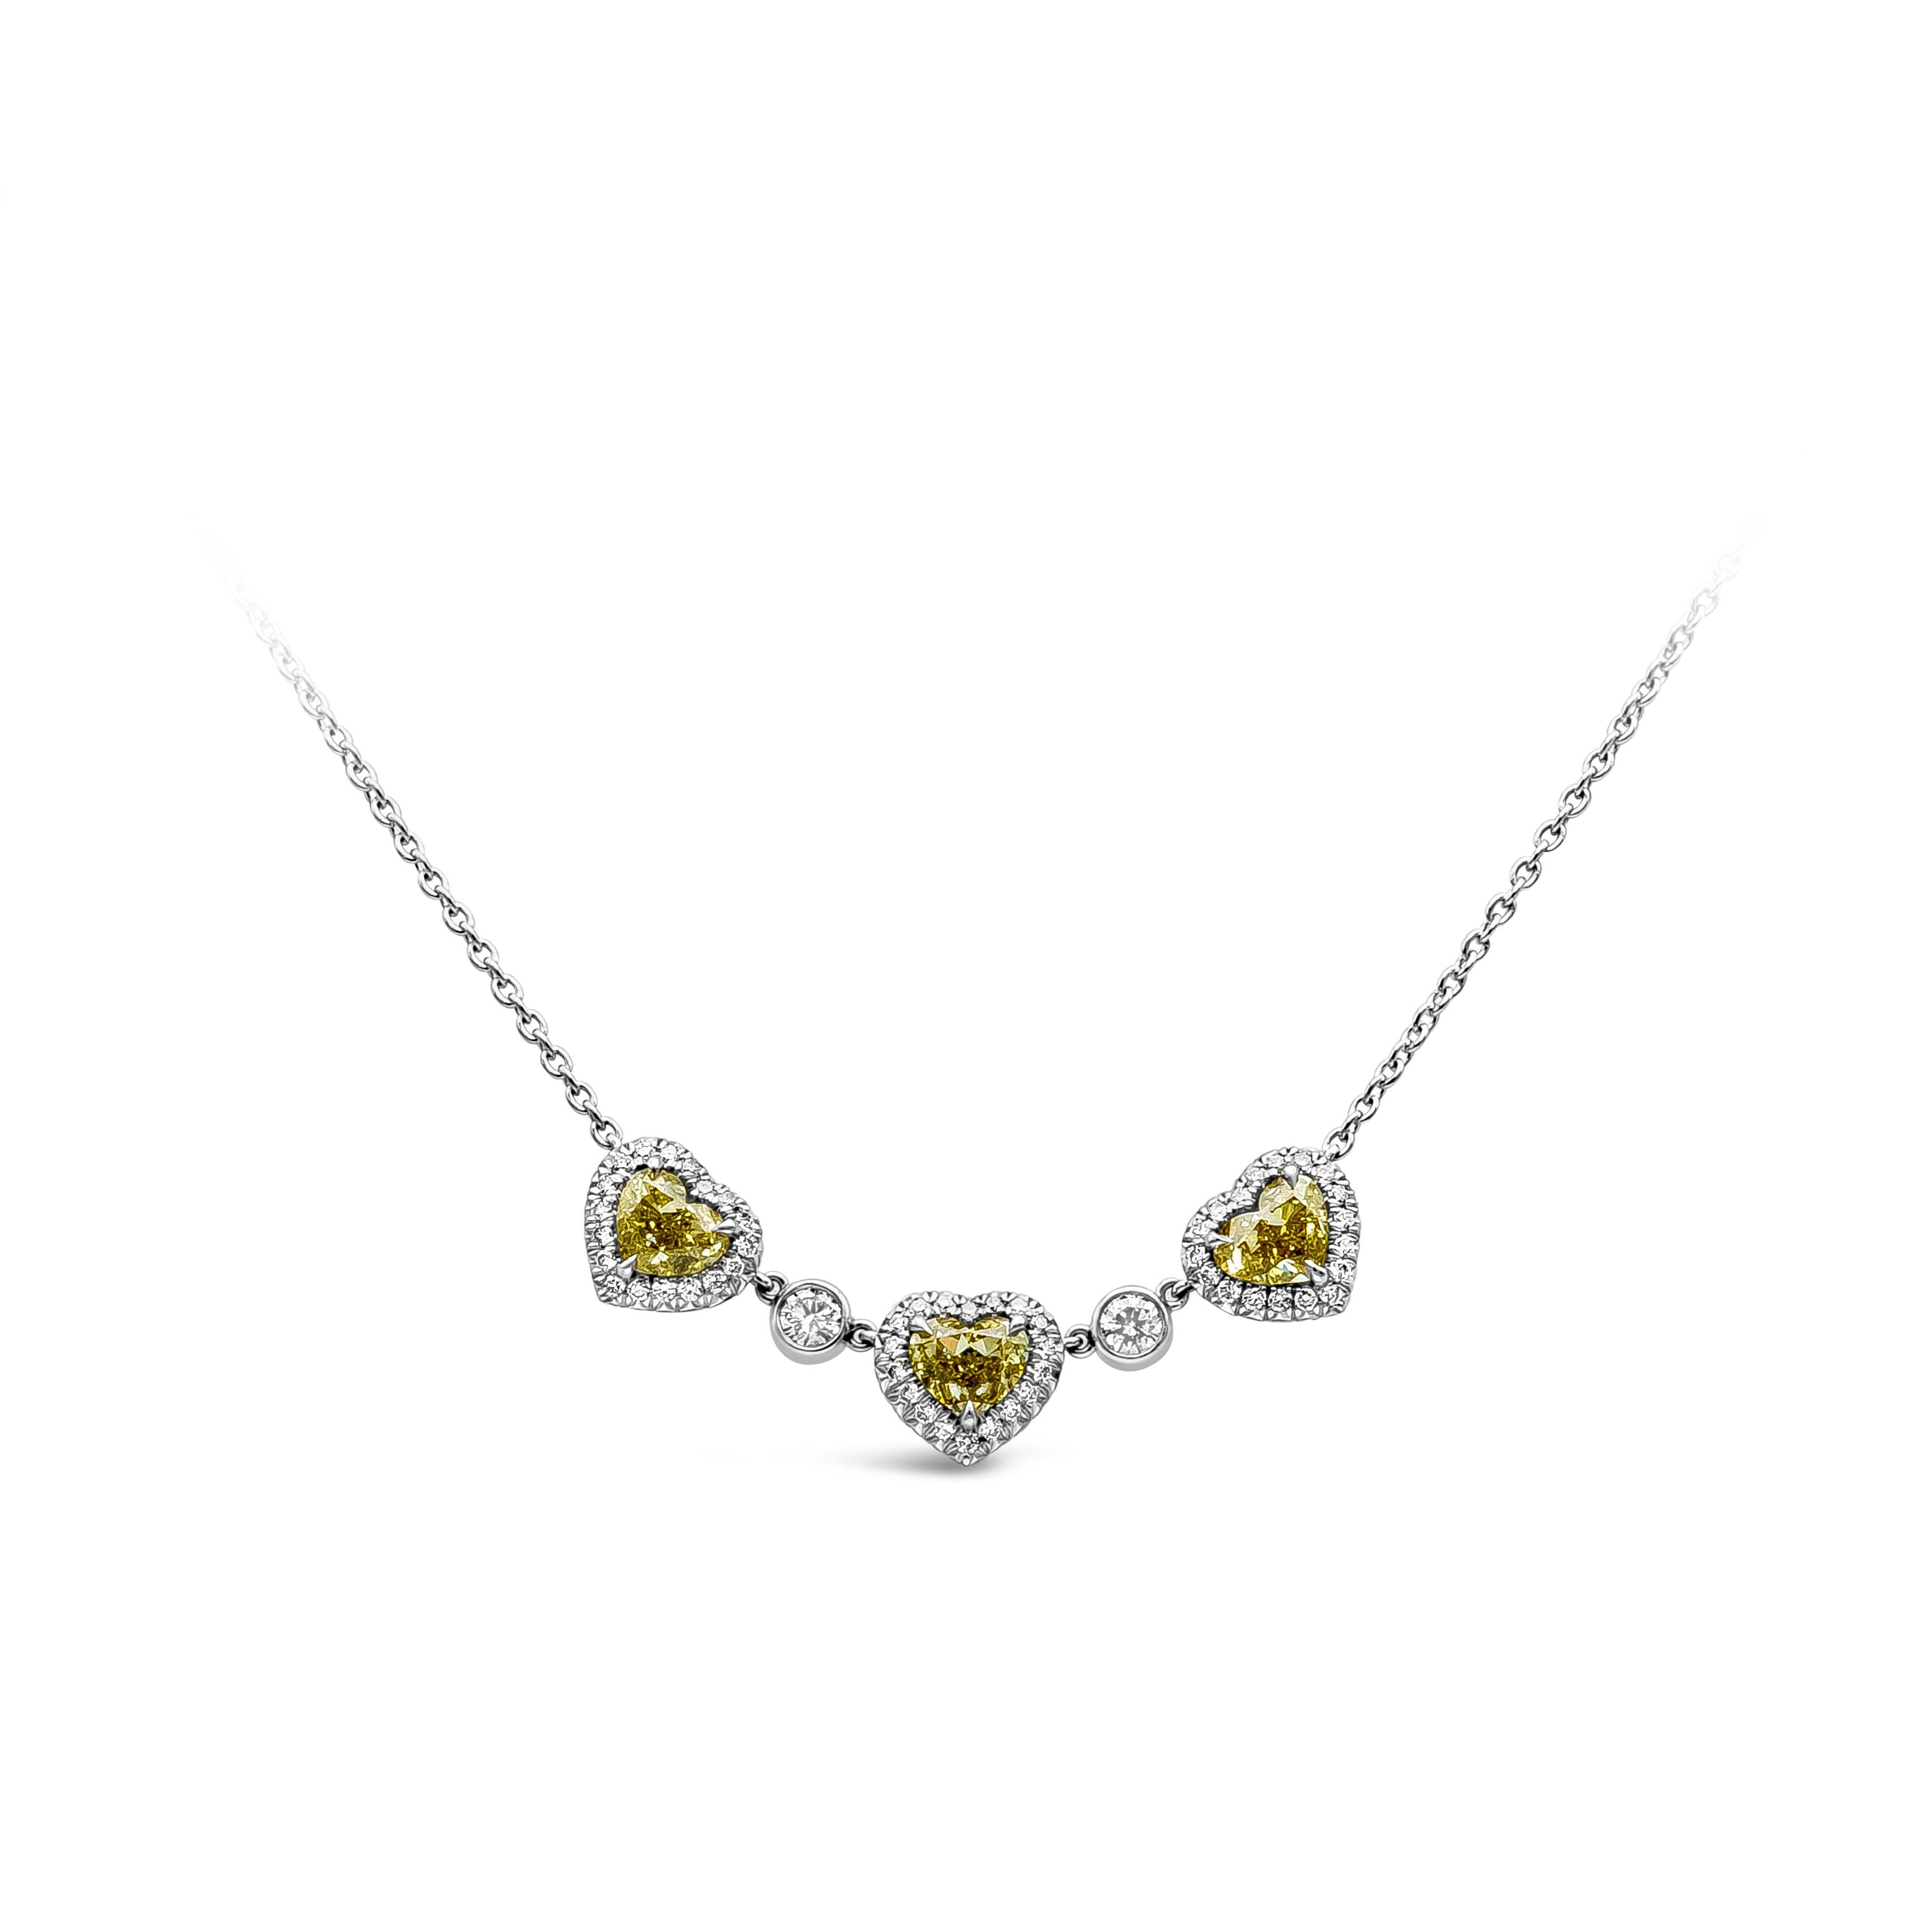 Eine schlichte, aber elegante Diamantkette mit einer Reihe von drei herzförmigen, intensiv gelben Diamanten, die von hellen runden Diamanten akzentuiert werden. Zwei runde Diamanten befinden sich in der Lünette zwischen den in Platin gefassten